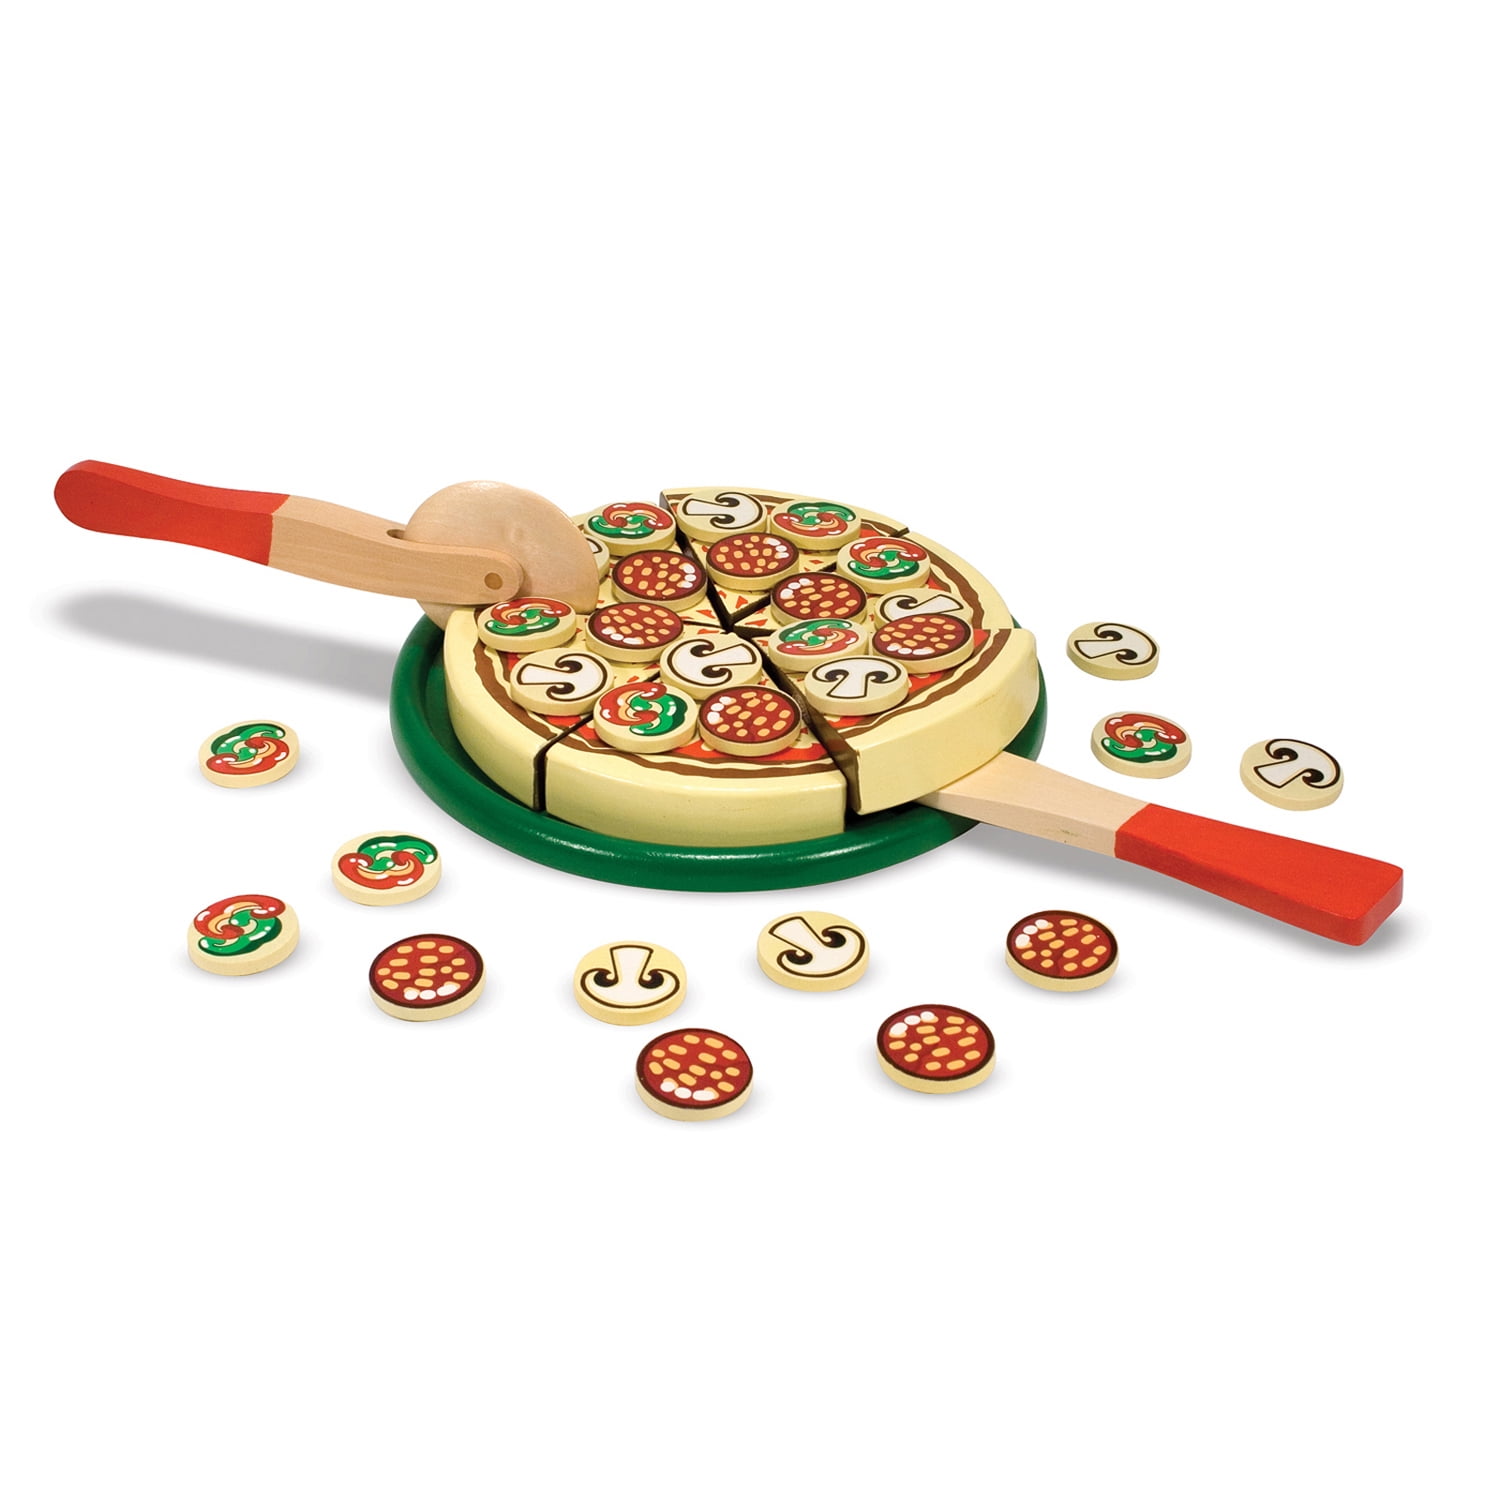 Melissa & Doug 10167 Pizza-Set Spielset Holz NEU!# 